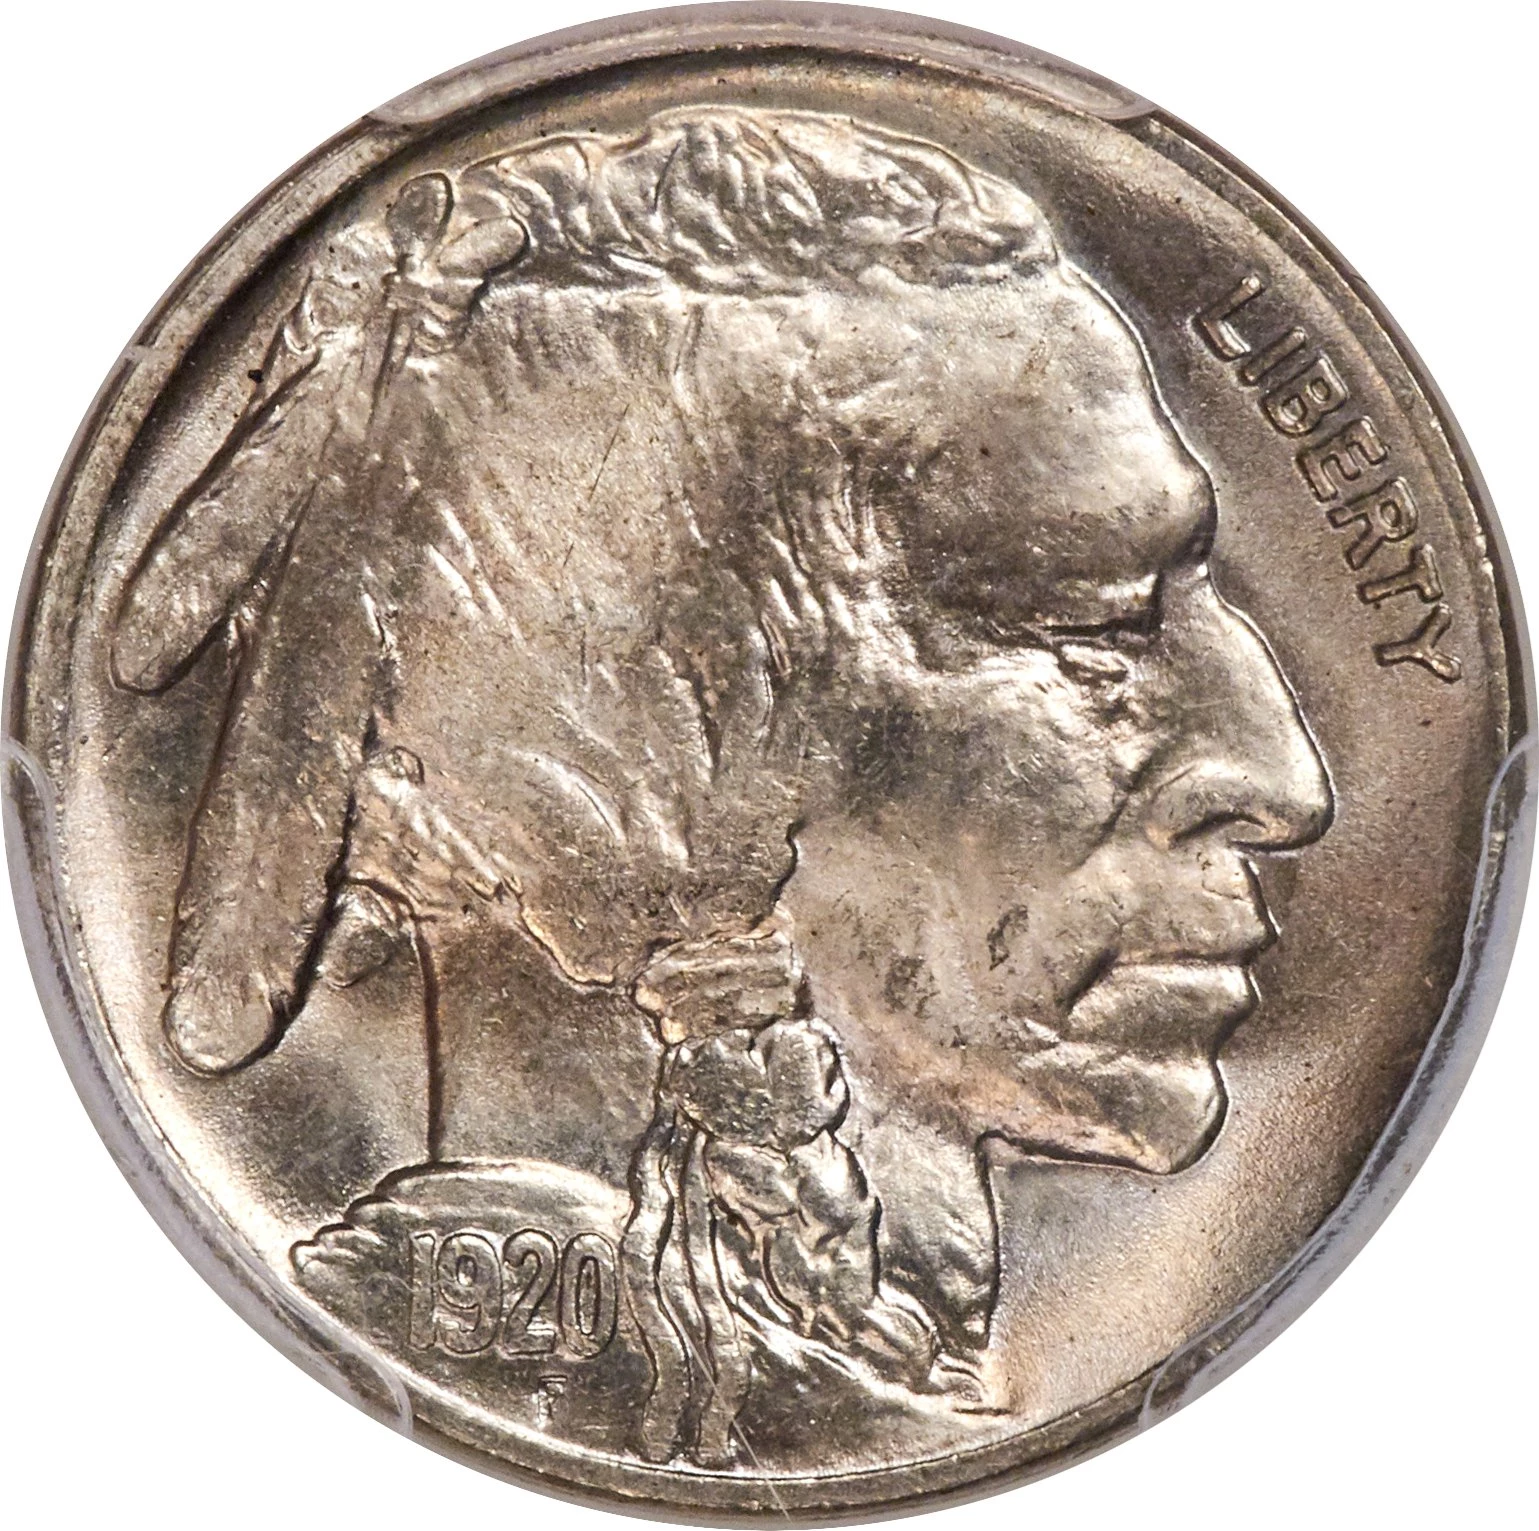 1920 S Buffalo Nickel - old San Francisco Indian head nickel